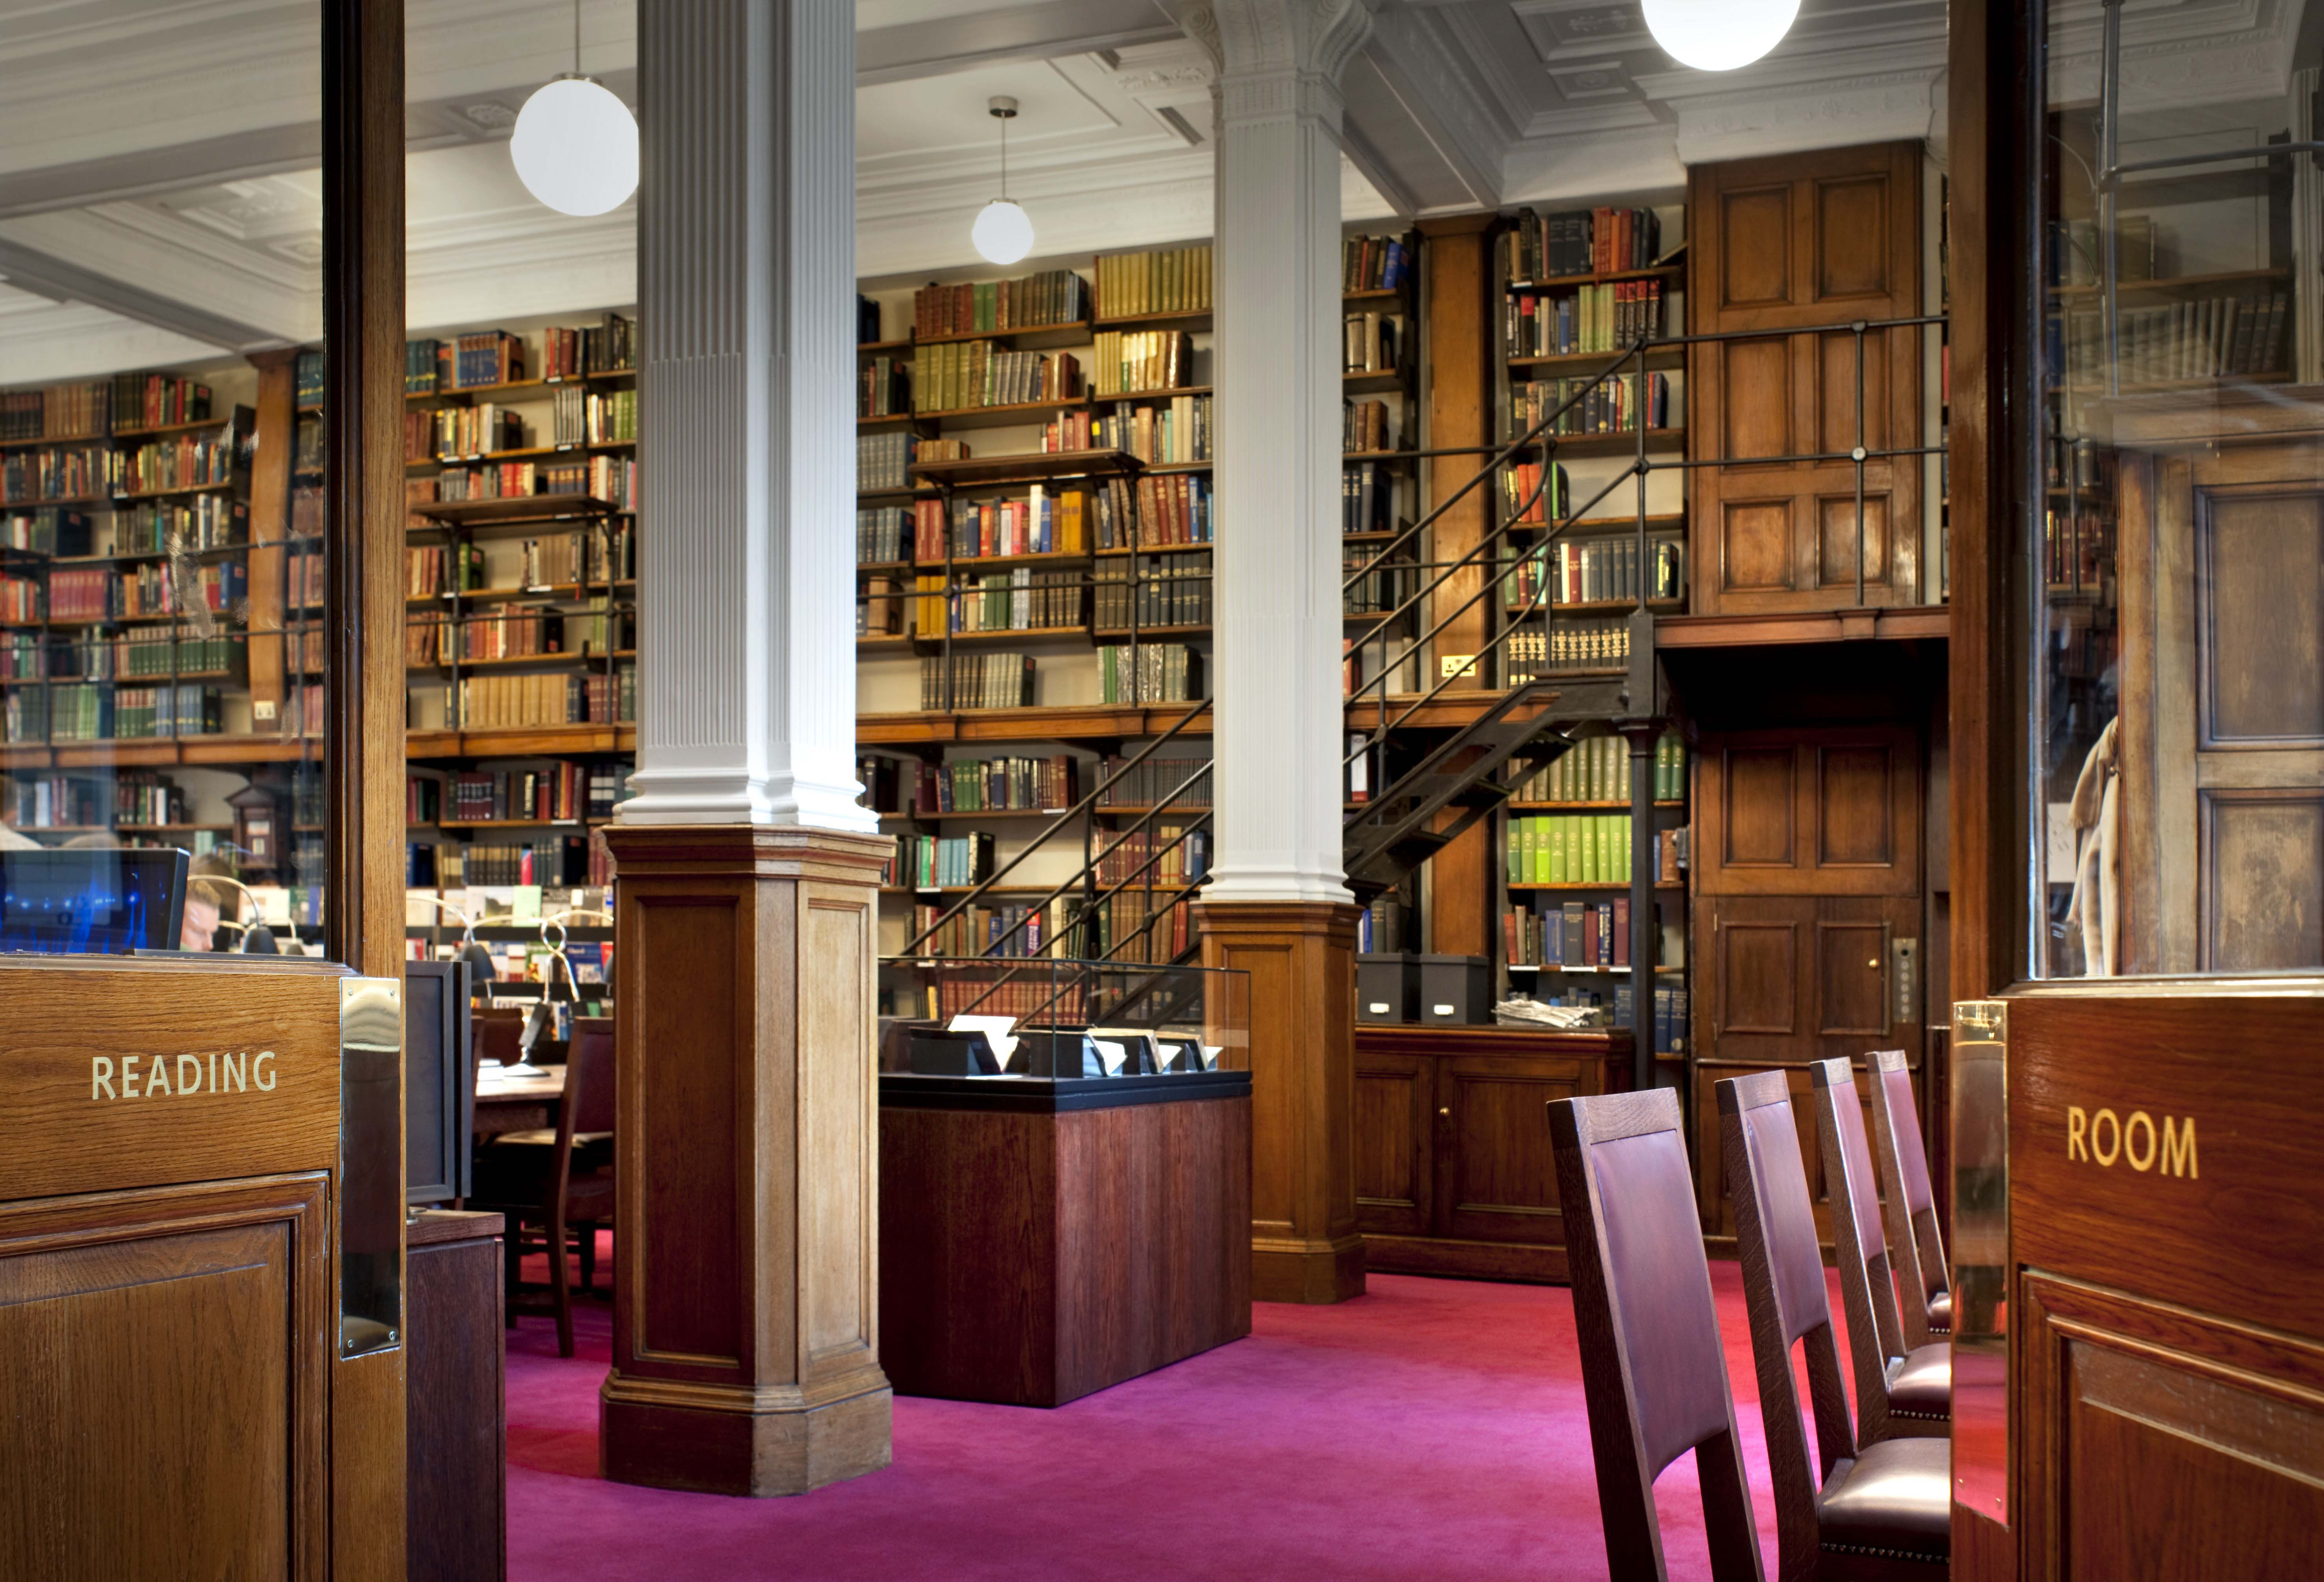 Index library. Библиотека «University Club Library», Нью- Йорк, США. (Peter Bond). Библиотека британского музея в Лондоне. Библиотека Кодрингтон Великобритания. Национальная библиотека Великобритании.